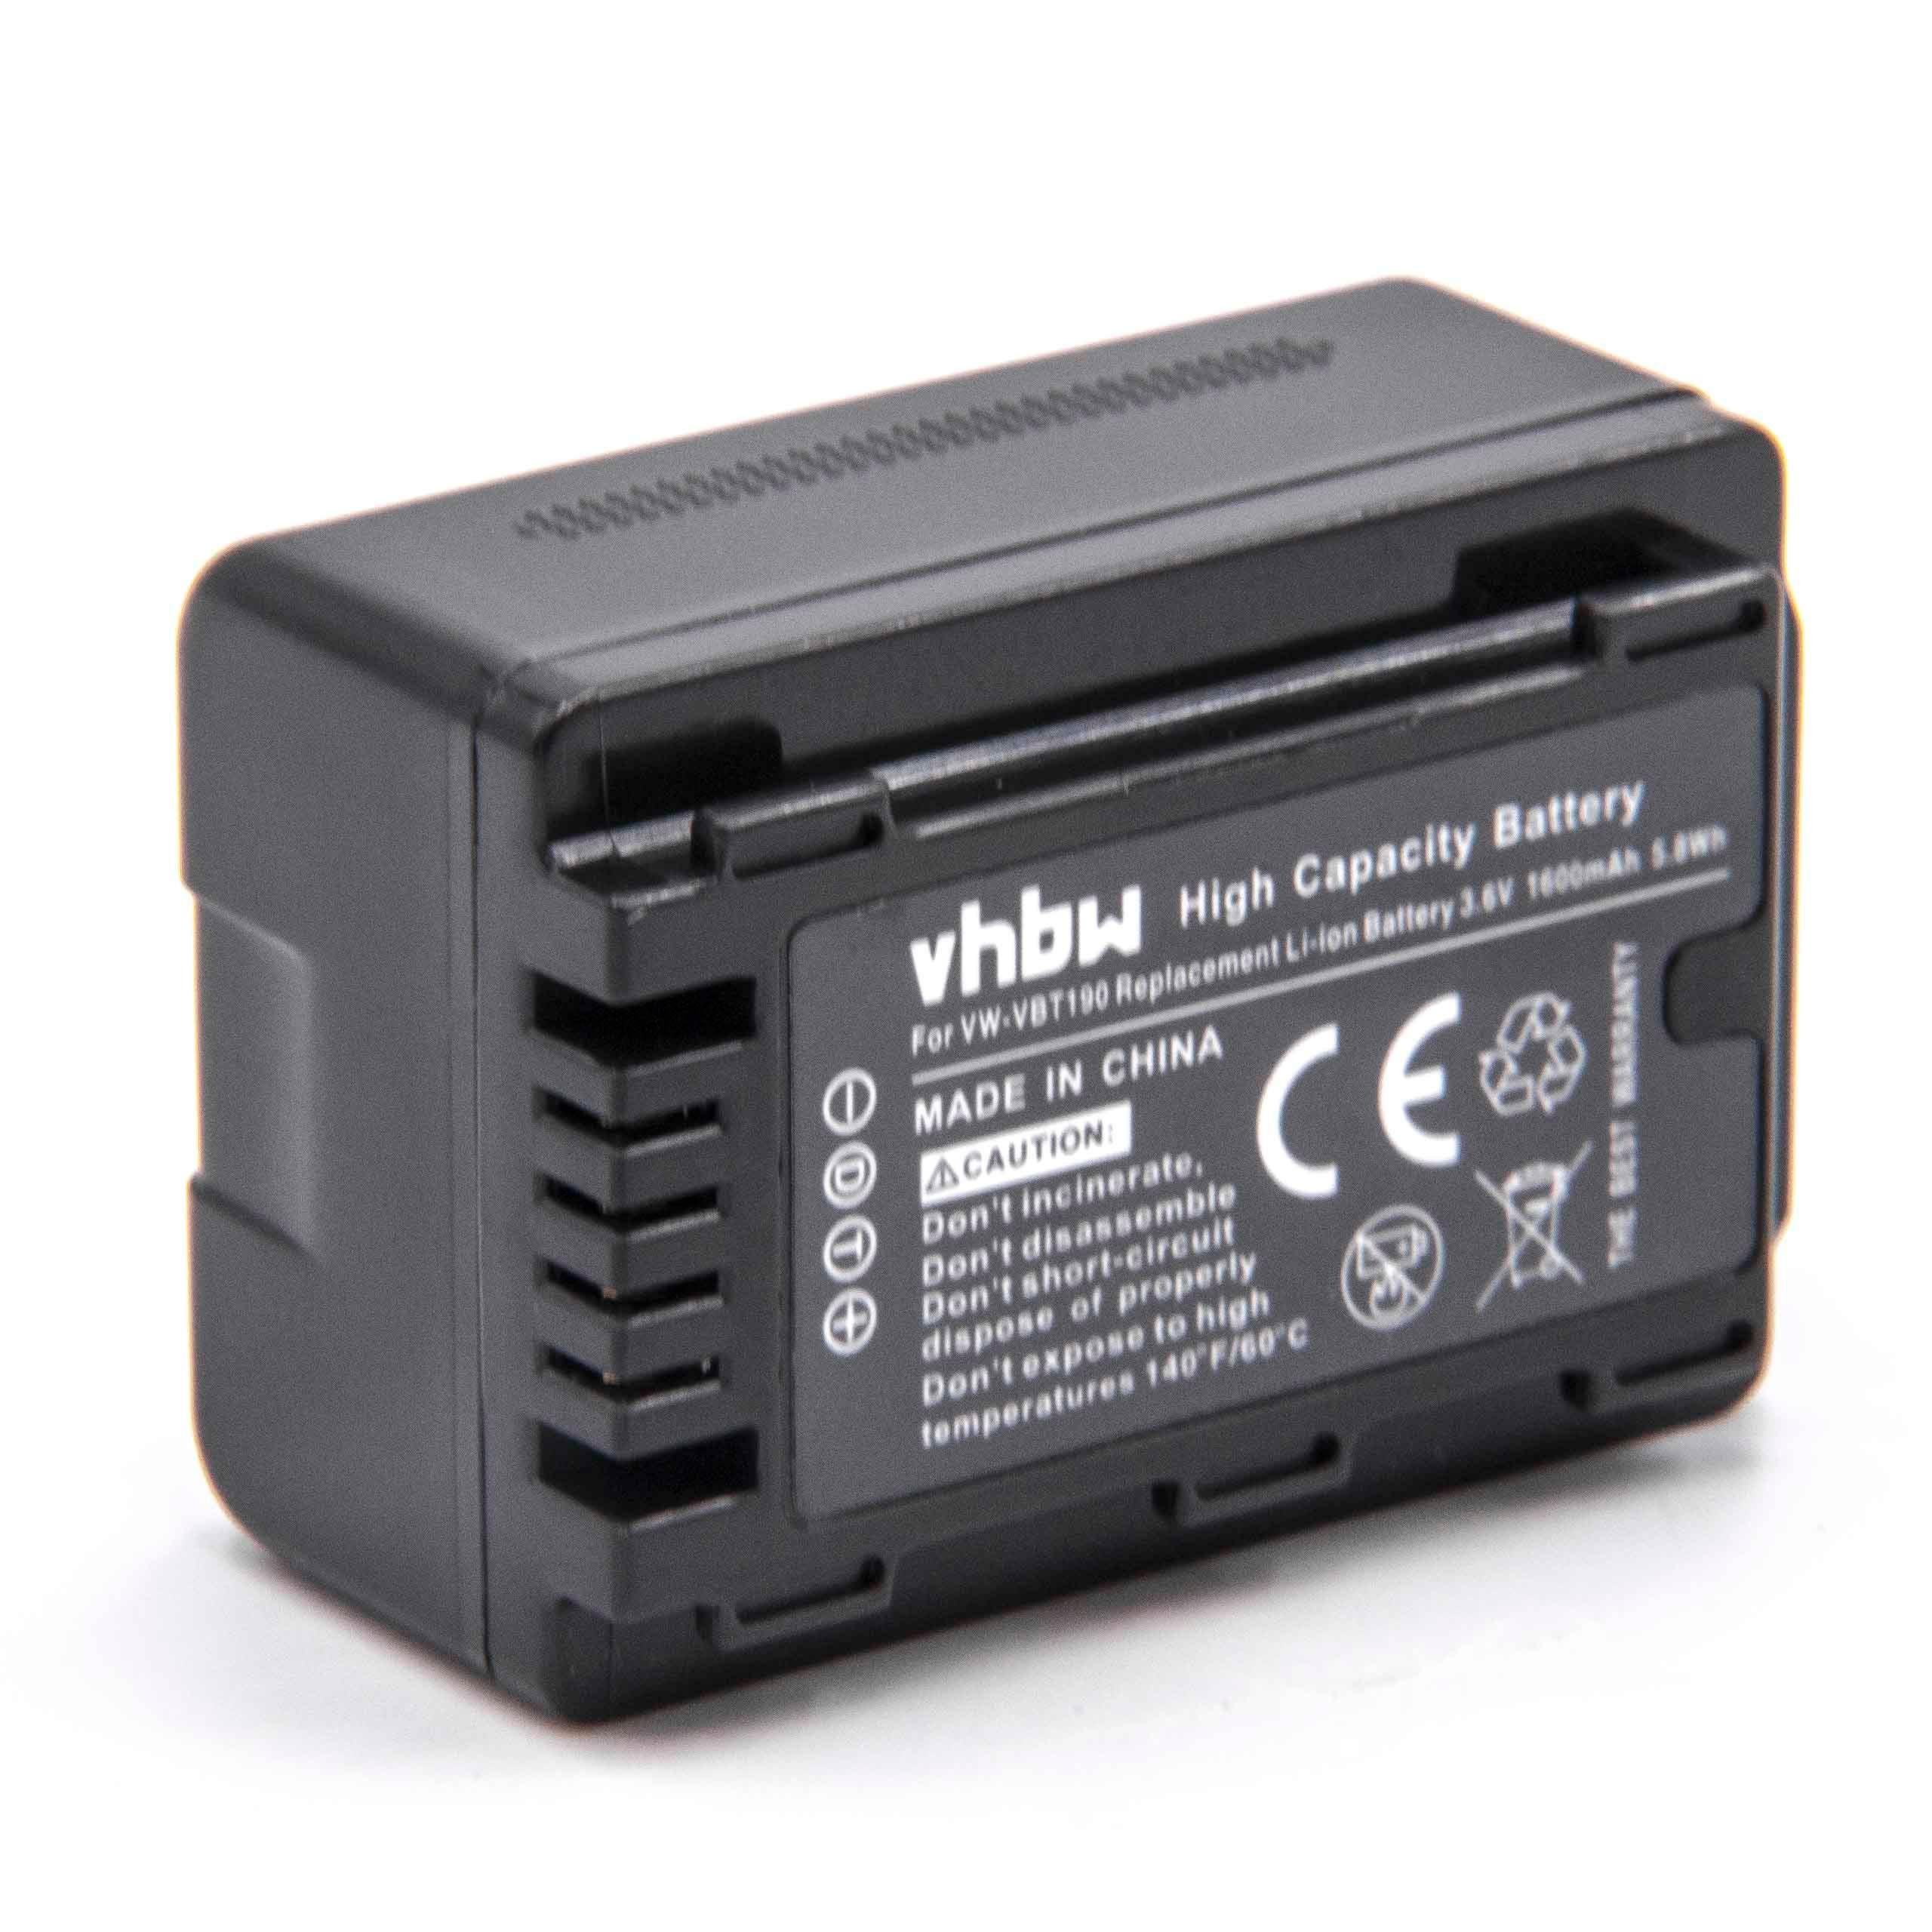 Kamera-Akku für vhbw mAh passend HC-989, HC-770EB, HC-V110GK, Panasonic HC-V110, 1600